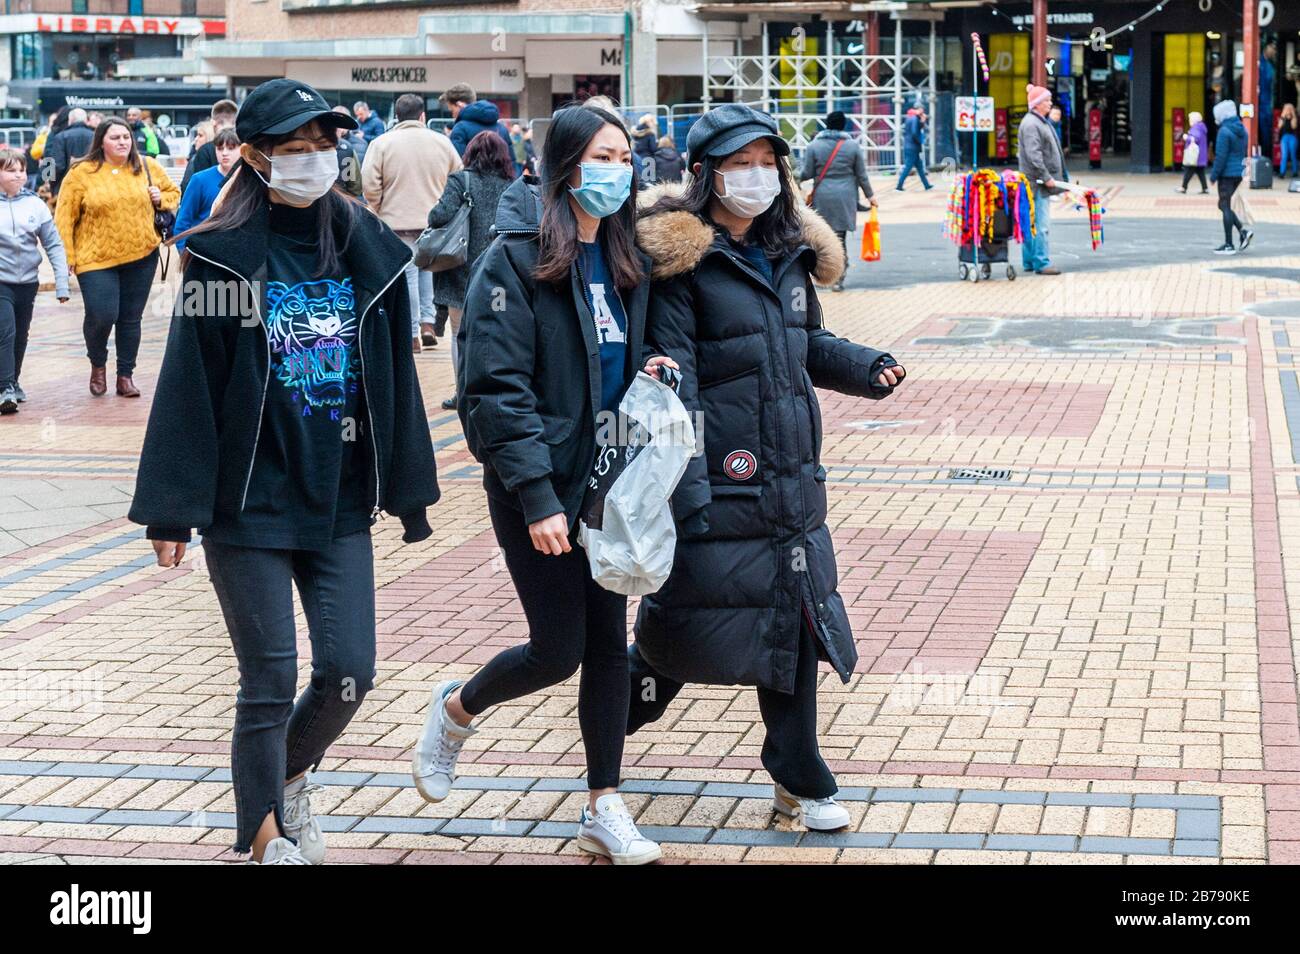 Coventry, West Midlands, Royaume-Uni. 14 mars 2020. La pandémie de coronavirus a forcé les clients à porter des masques de protection au centre-ville de Coventry cet après-midi. Crédit : Andy Gibson/Alay Live News Banque D'Images